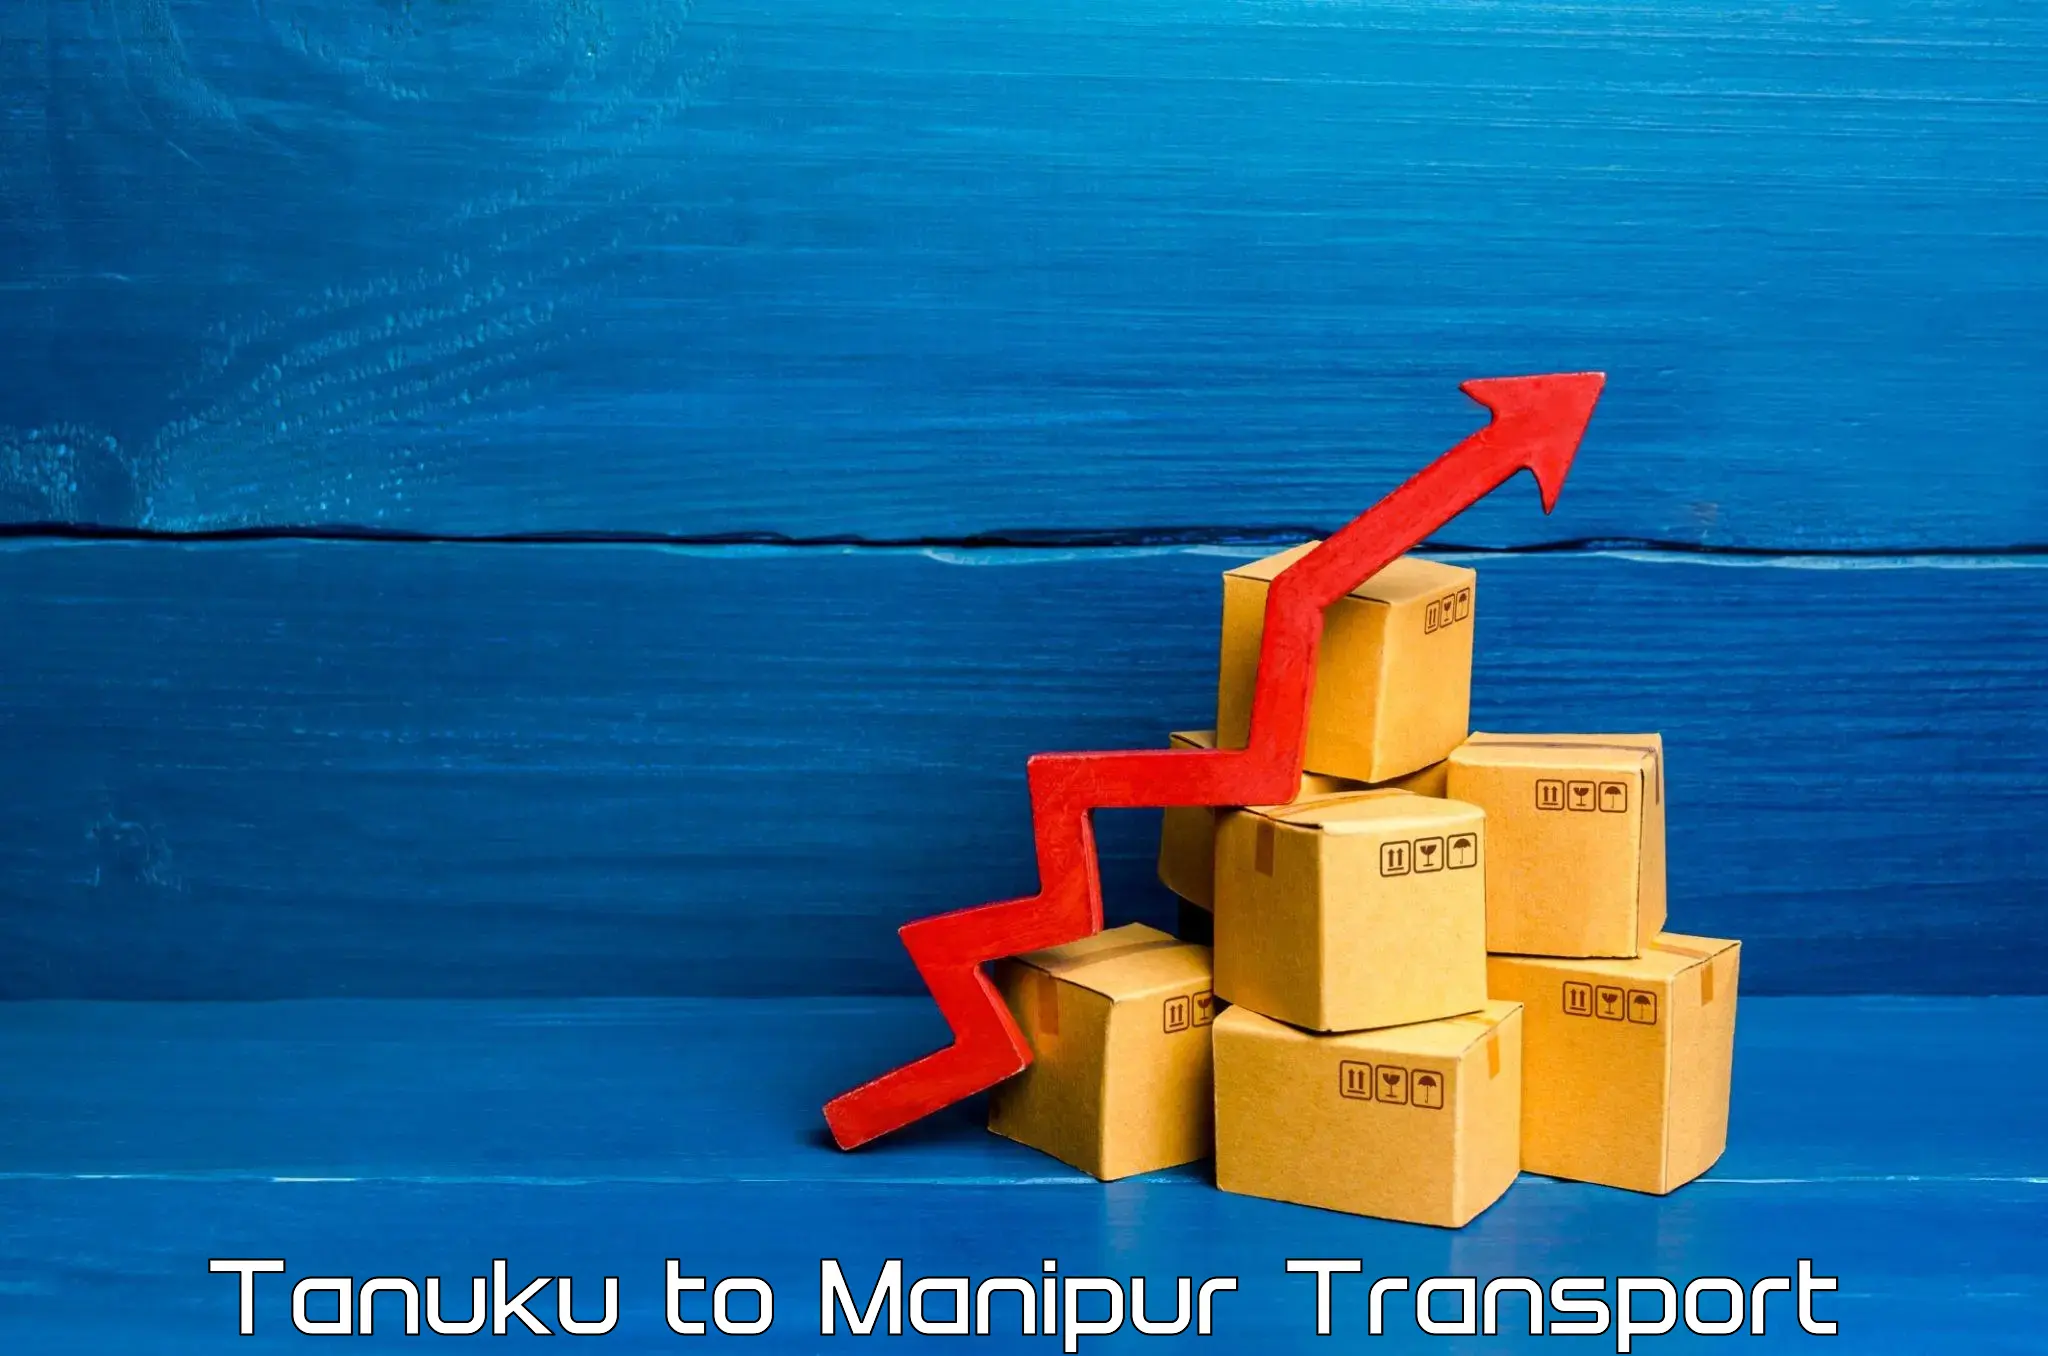 Pick up transport service Tanuku to Manipur